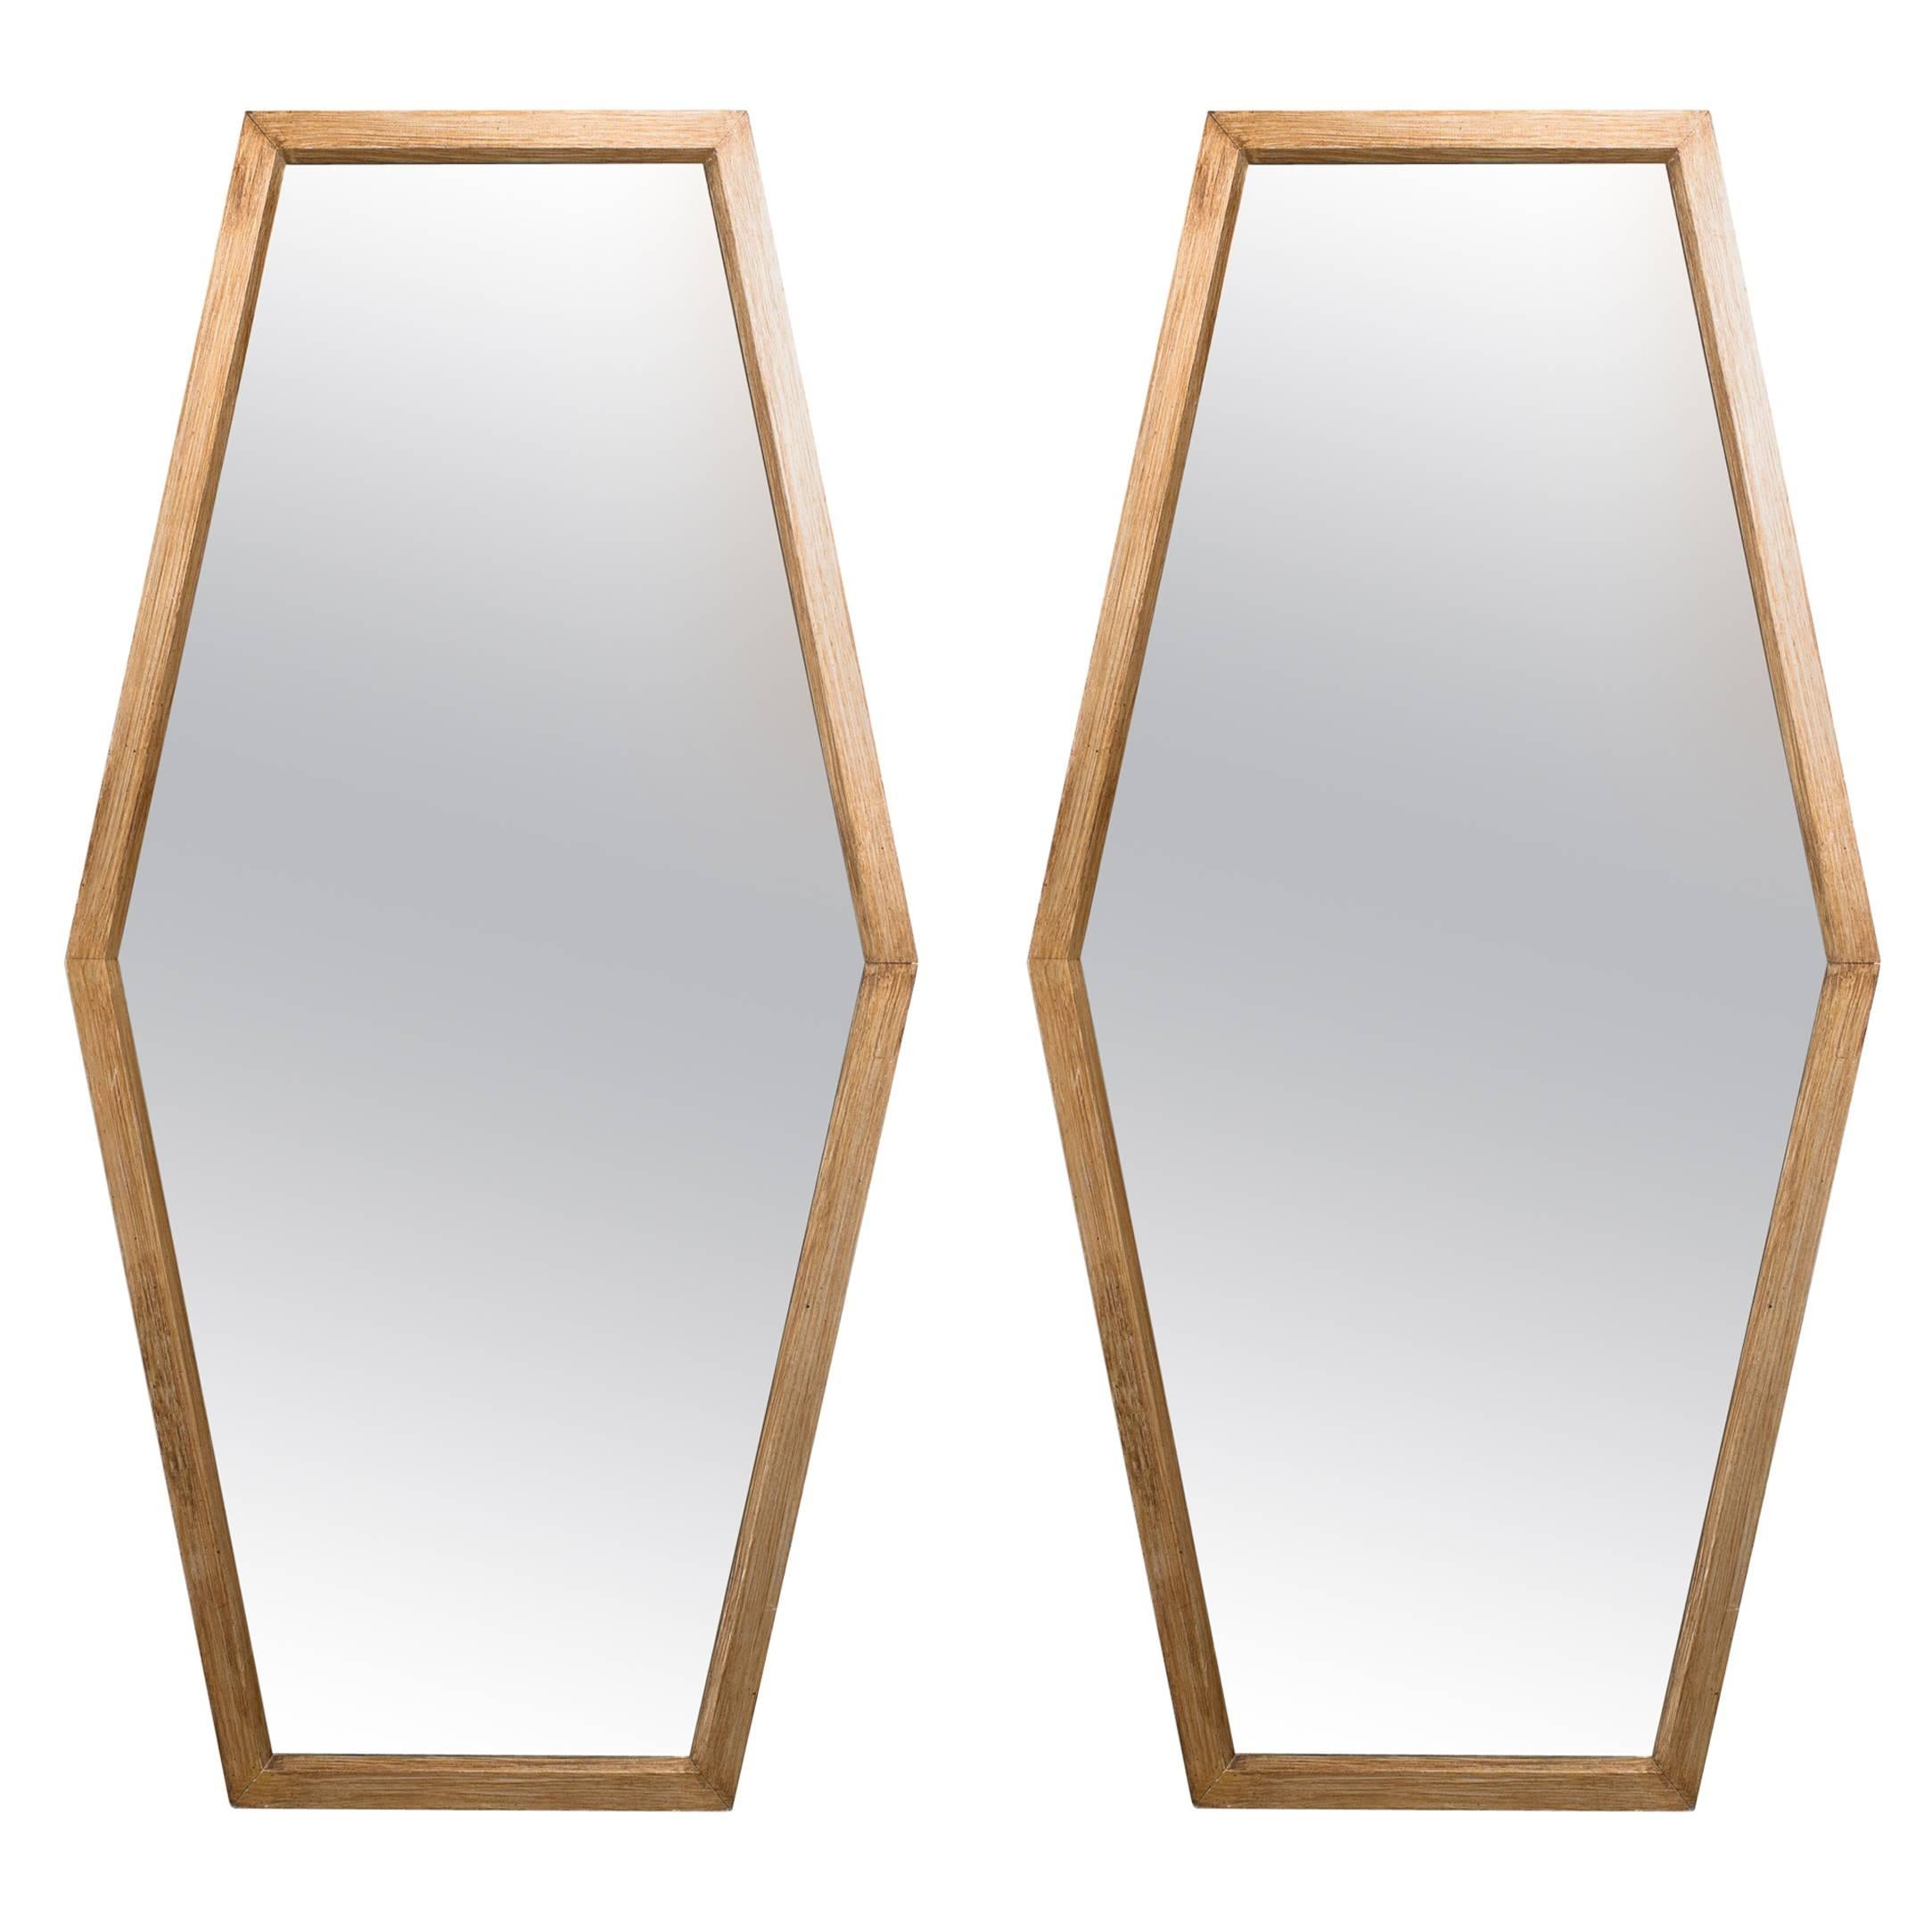 Pair of 1960s Wood Modern Hexagonal Custom Mirrors from Boston